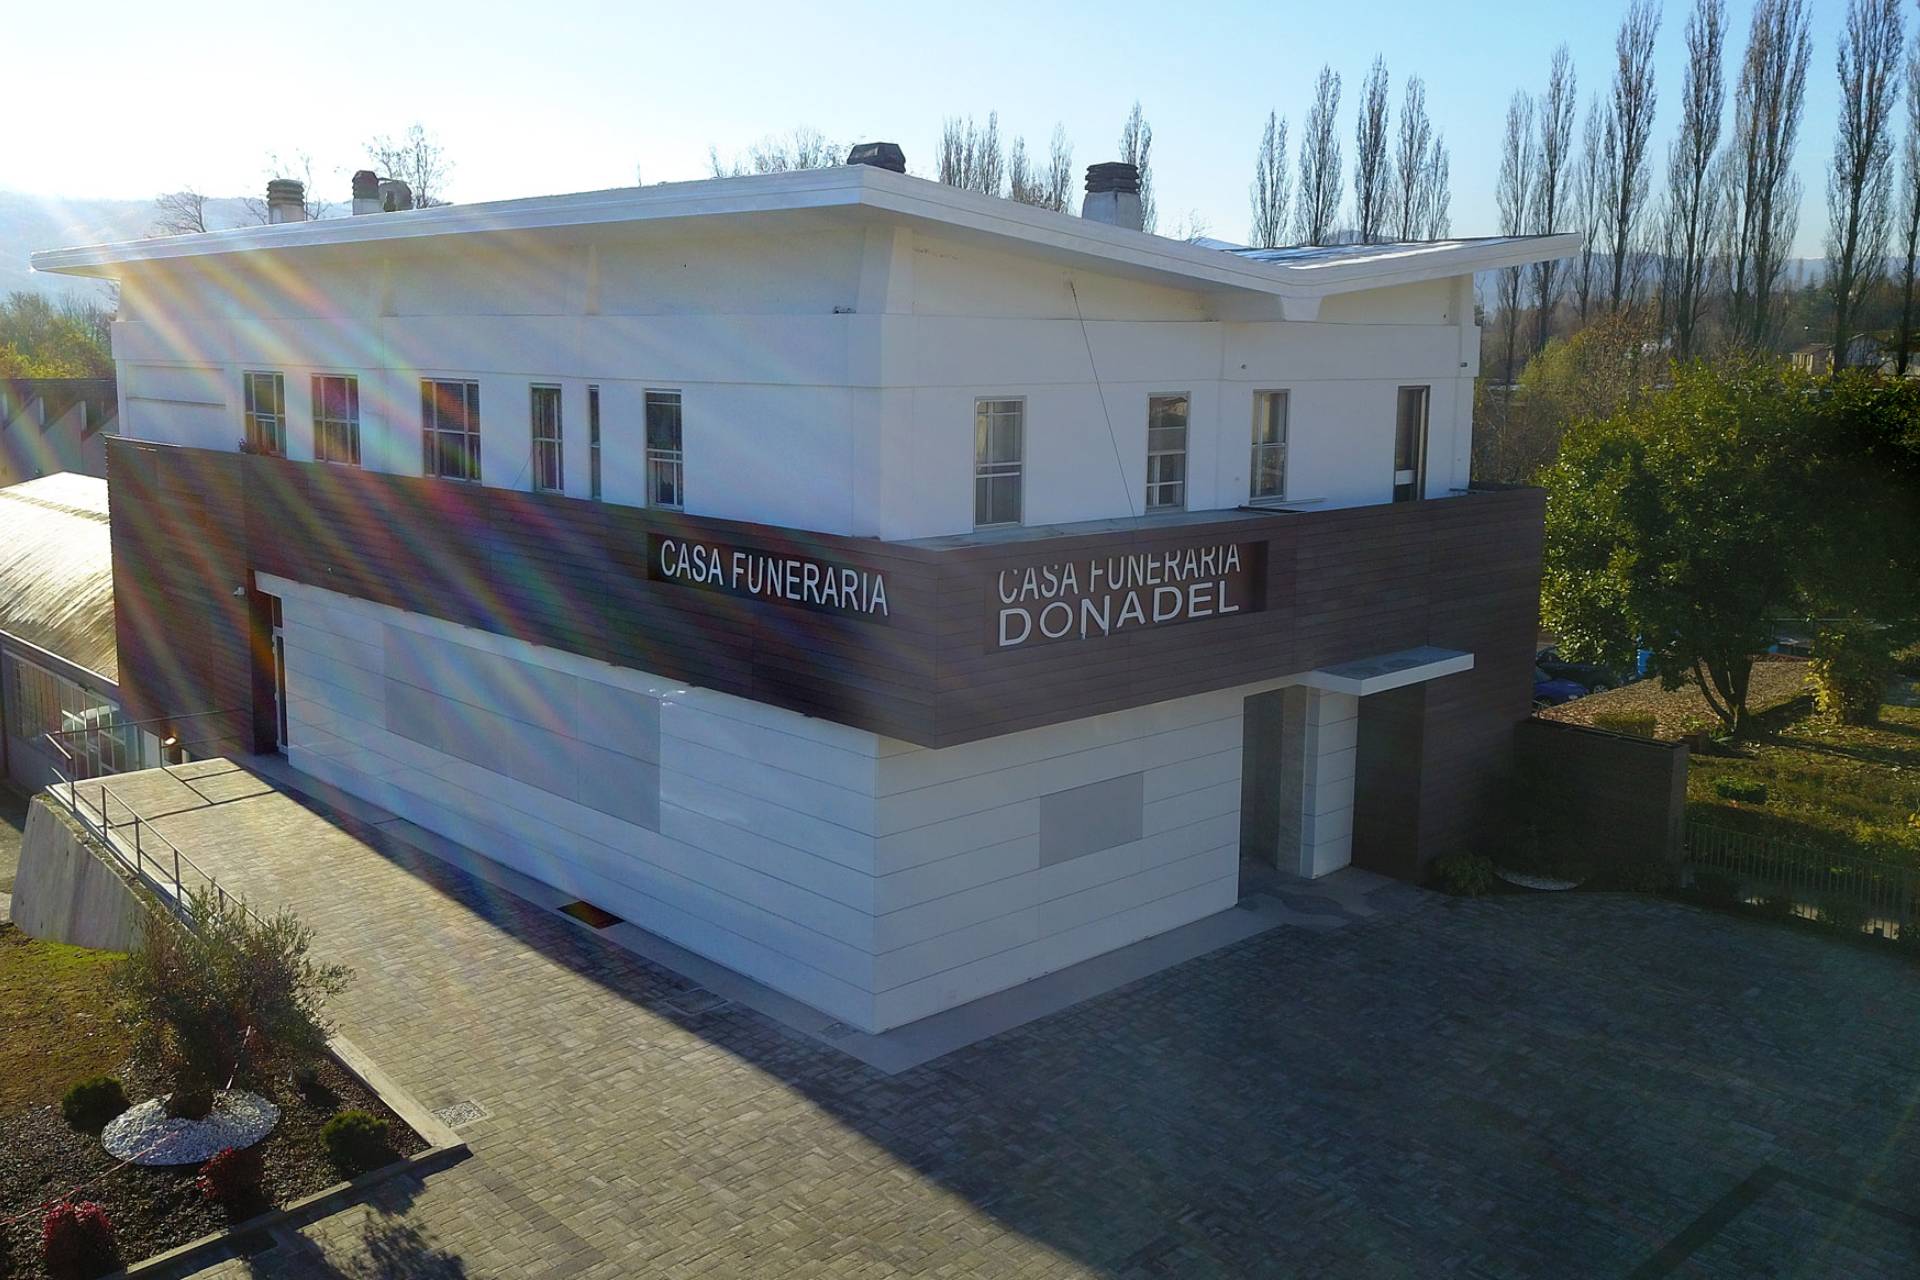 Casa Funeraria Donadel